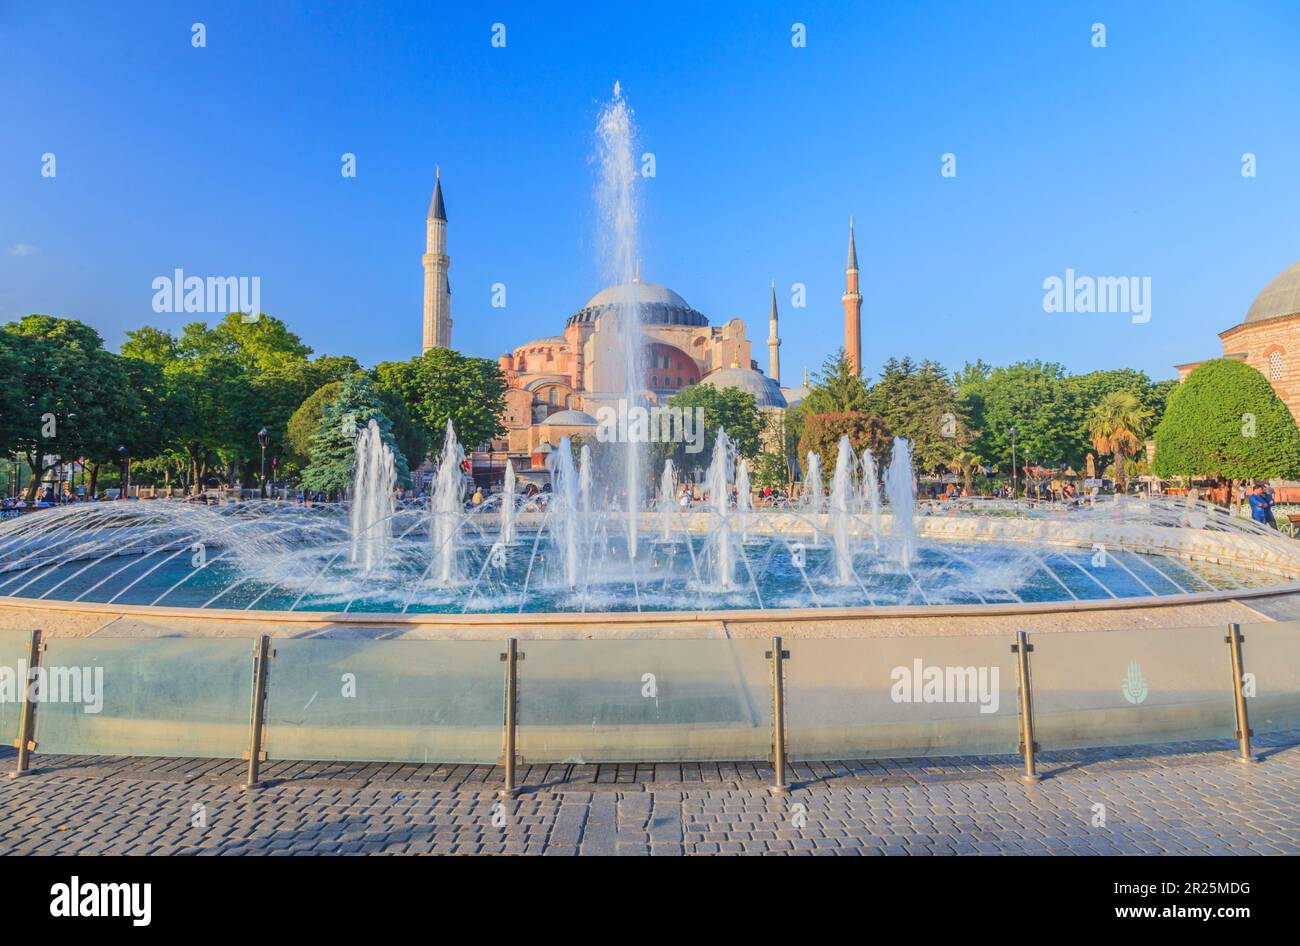 Photo de Sainte-Sophie à Istanbul avec fontaine photographiée du parc Sultanahmet pendant la journée dans un ciel bleu et une couverture nuageuse légère en mai 2014 Banque D'Images